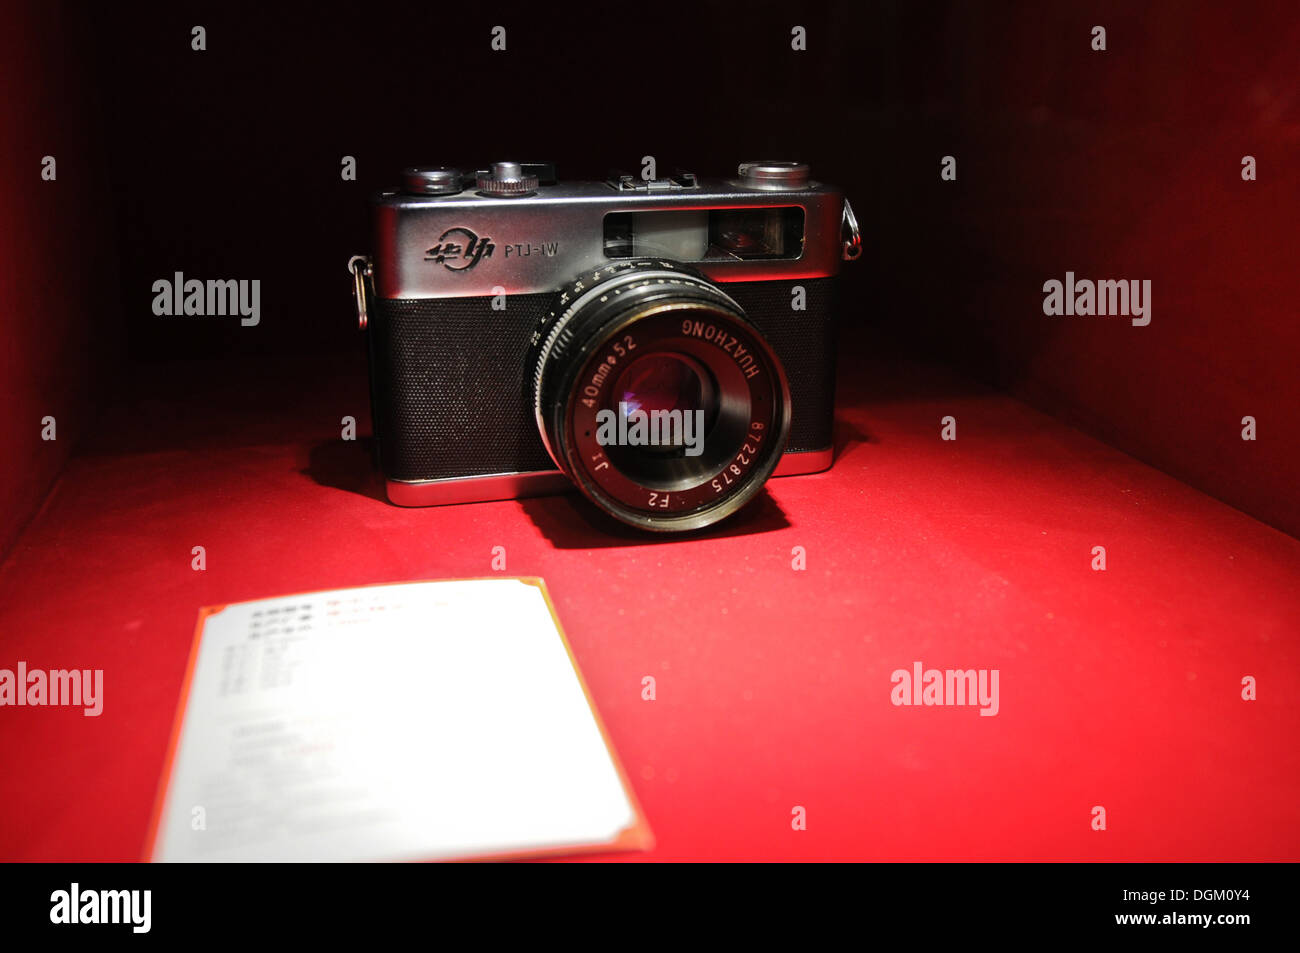 Huazhong PTJ-IW fotocamera reflex in museo della vecchia macchina fotografica la produzione in Cina a Shanghai Foto Stock